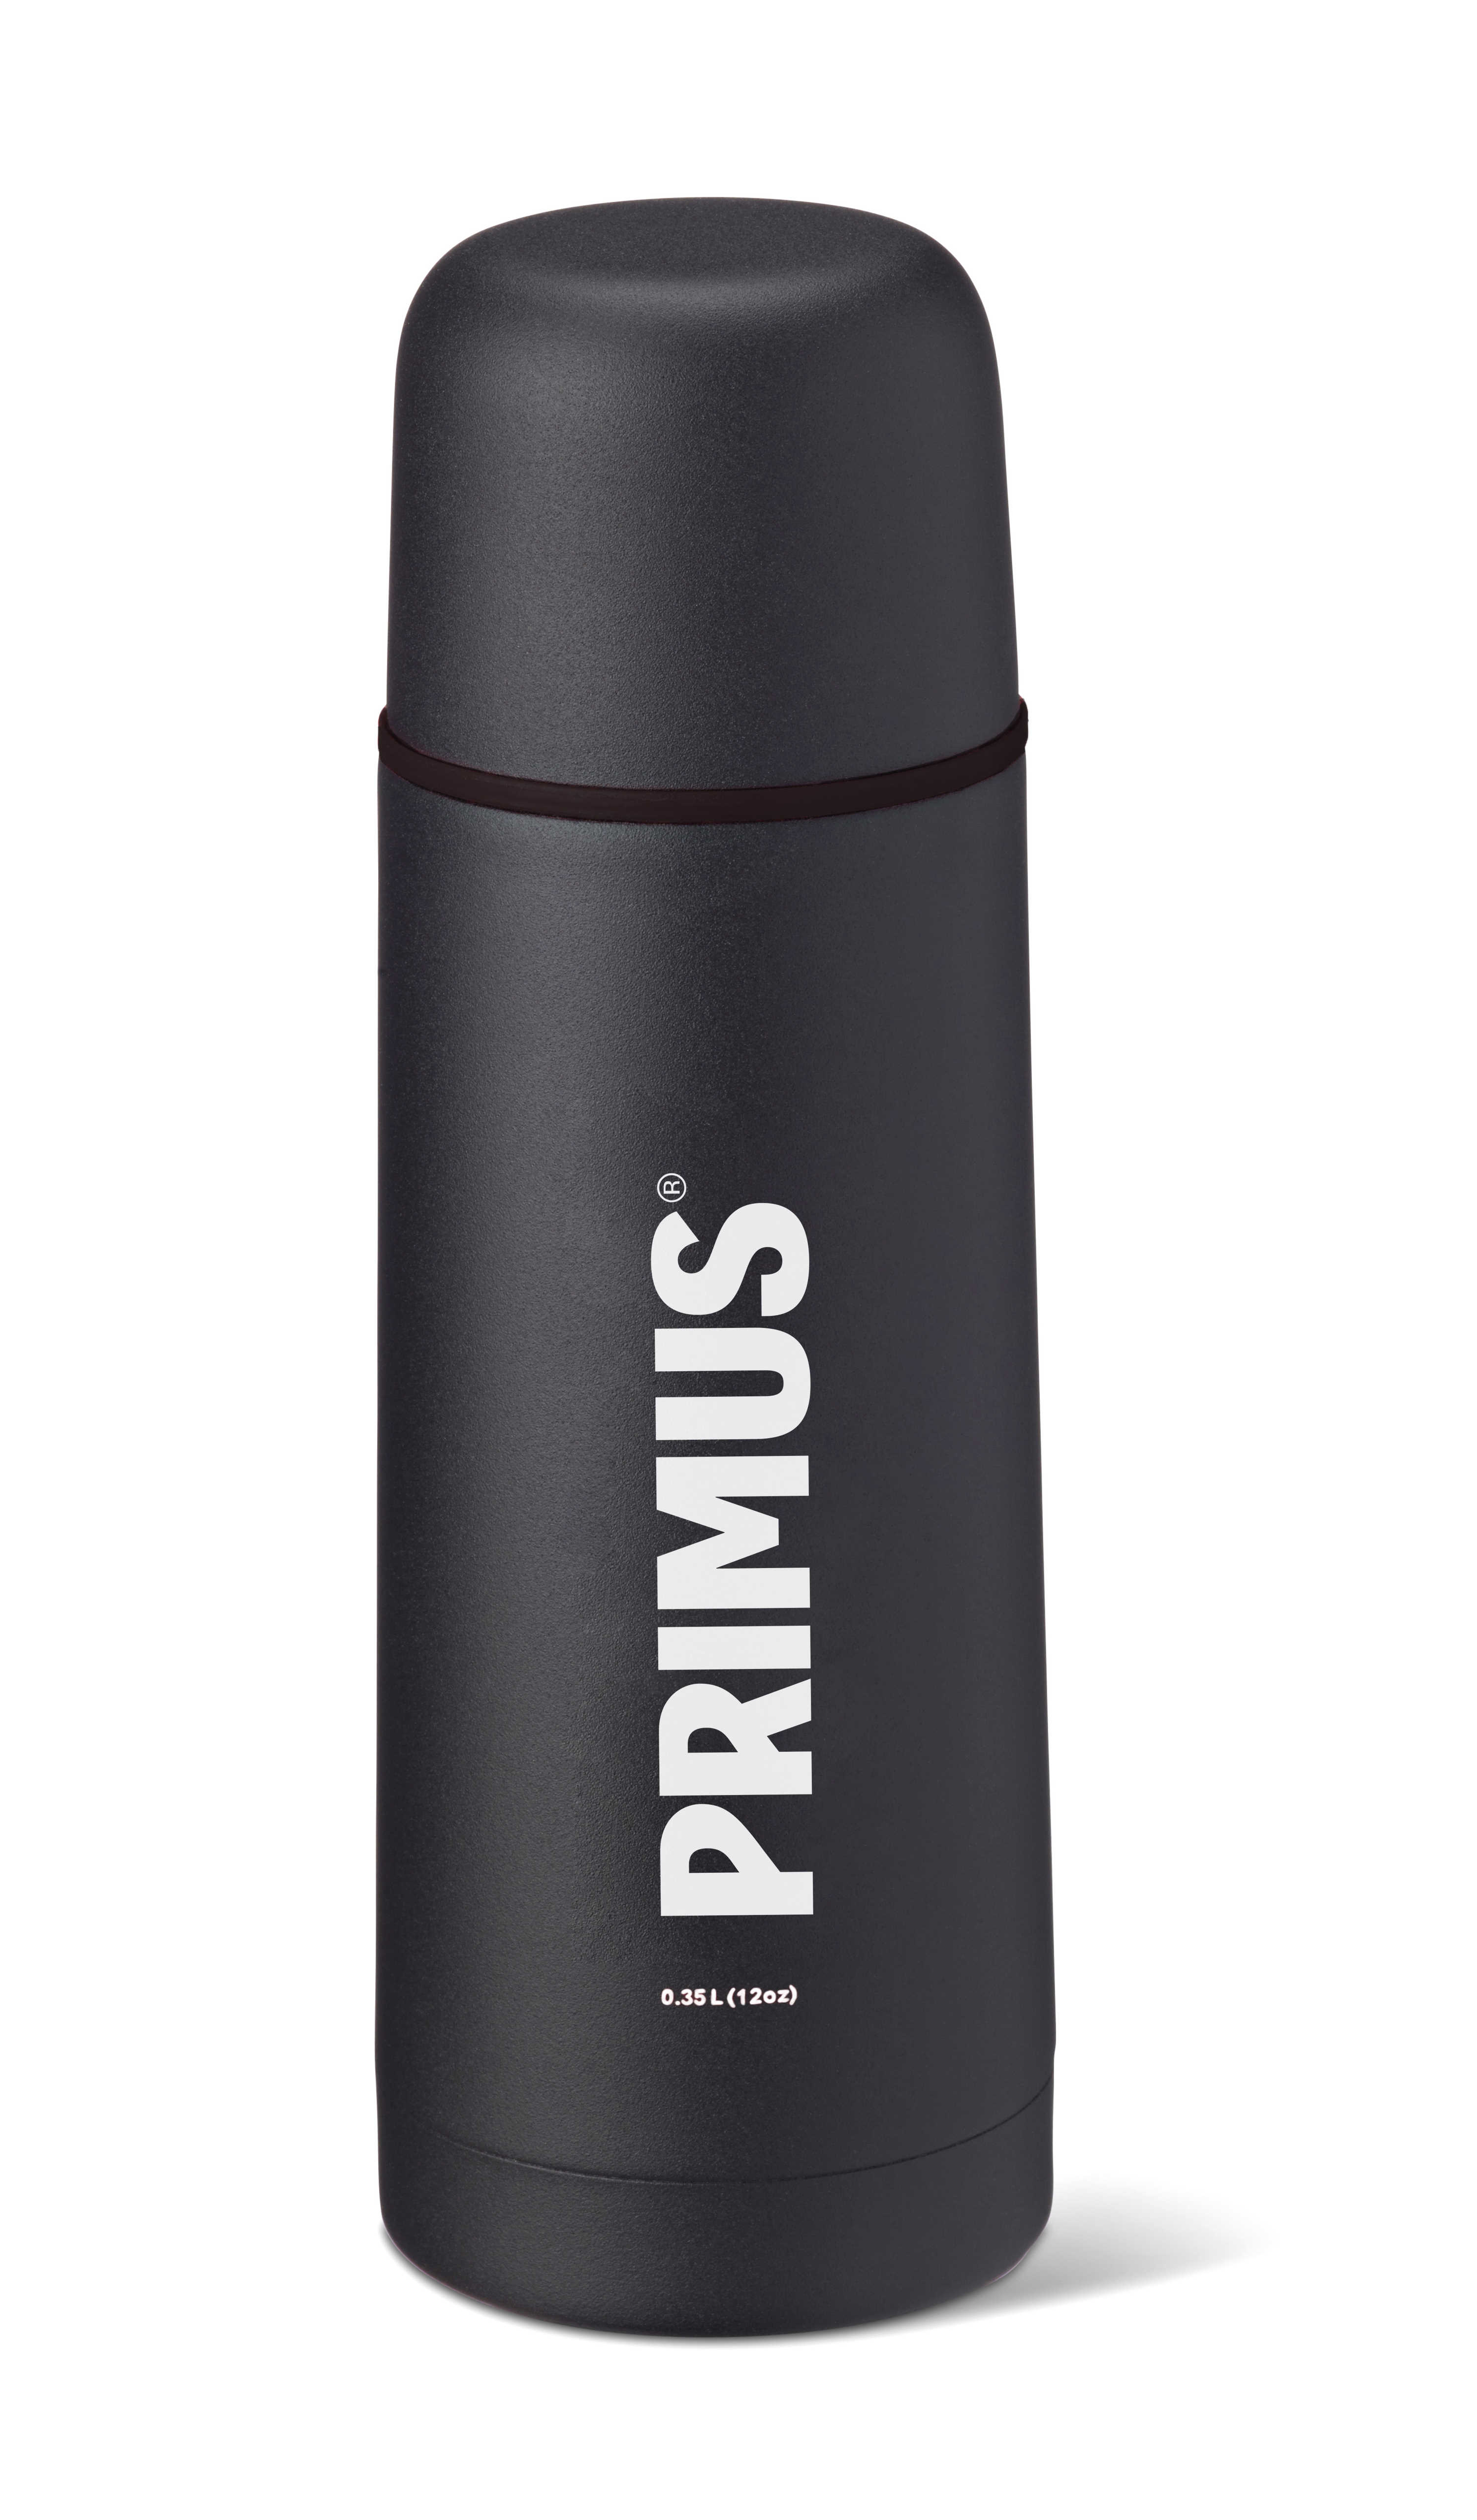 Primus Thermoflasche schwarz 0.35 Liter